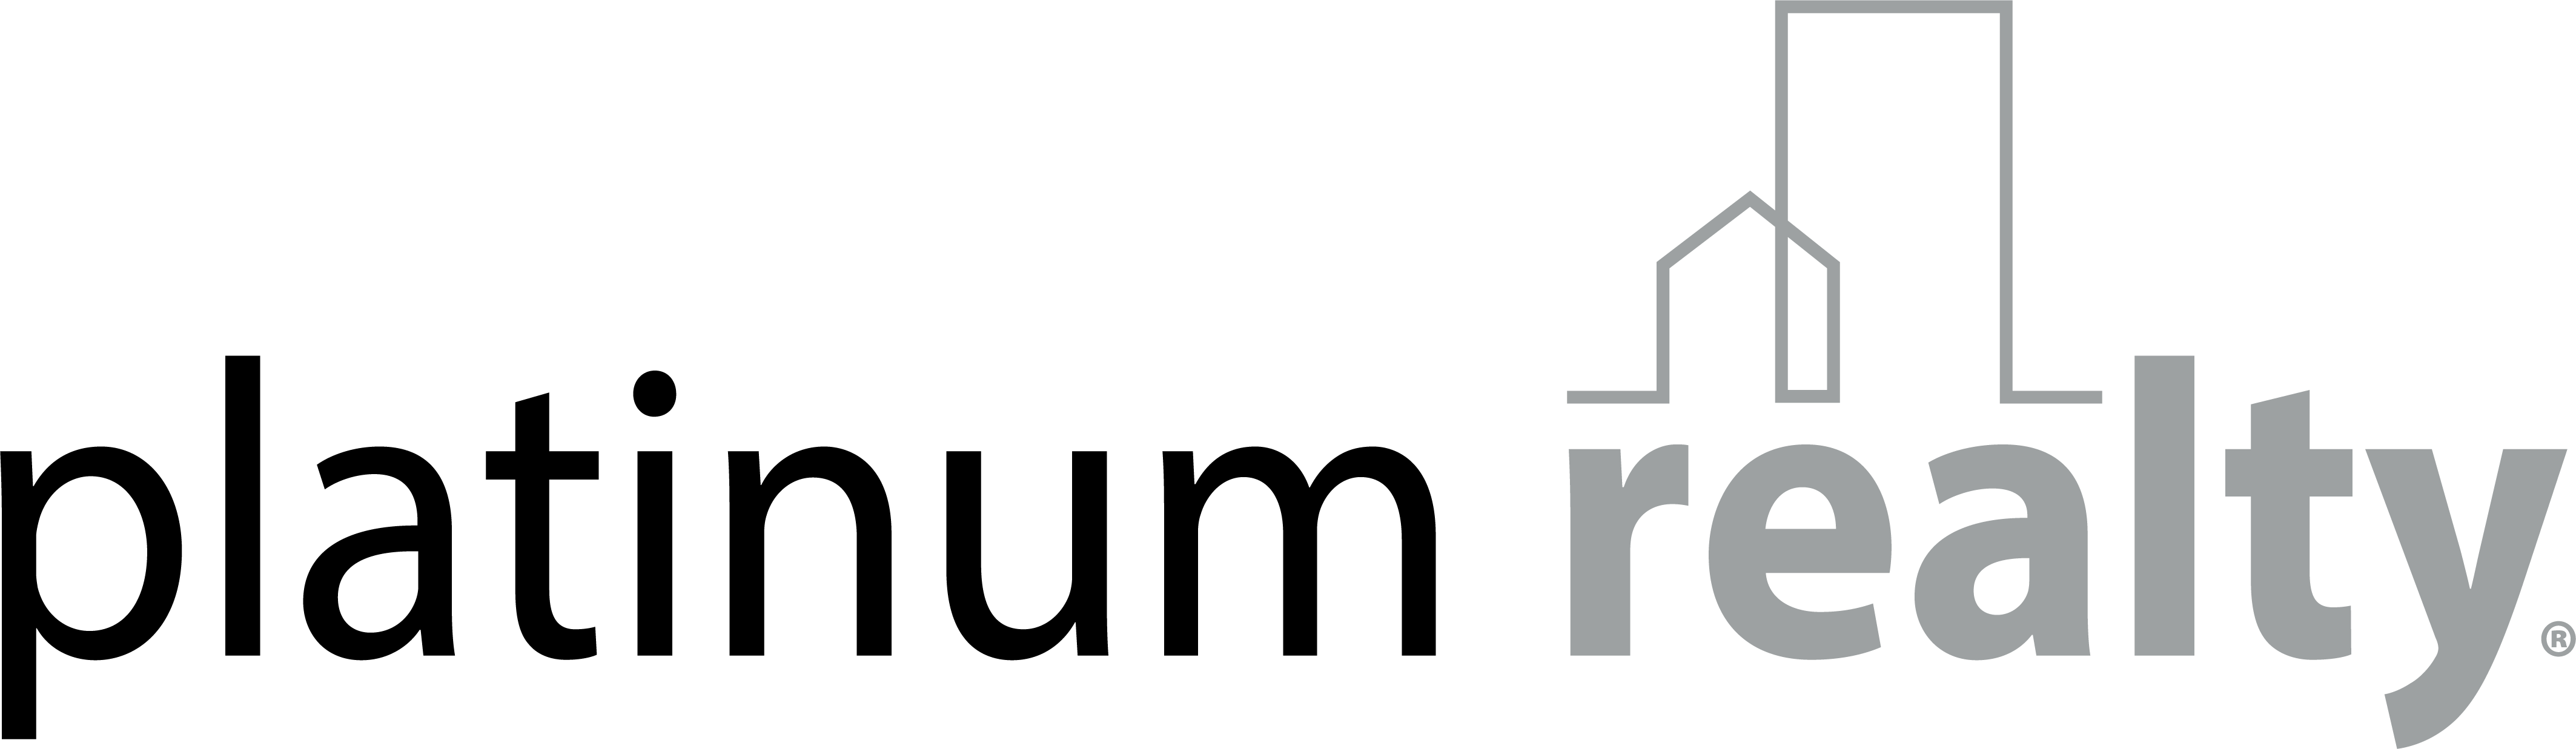 urrn logo